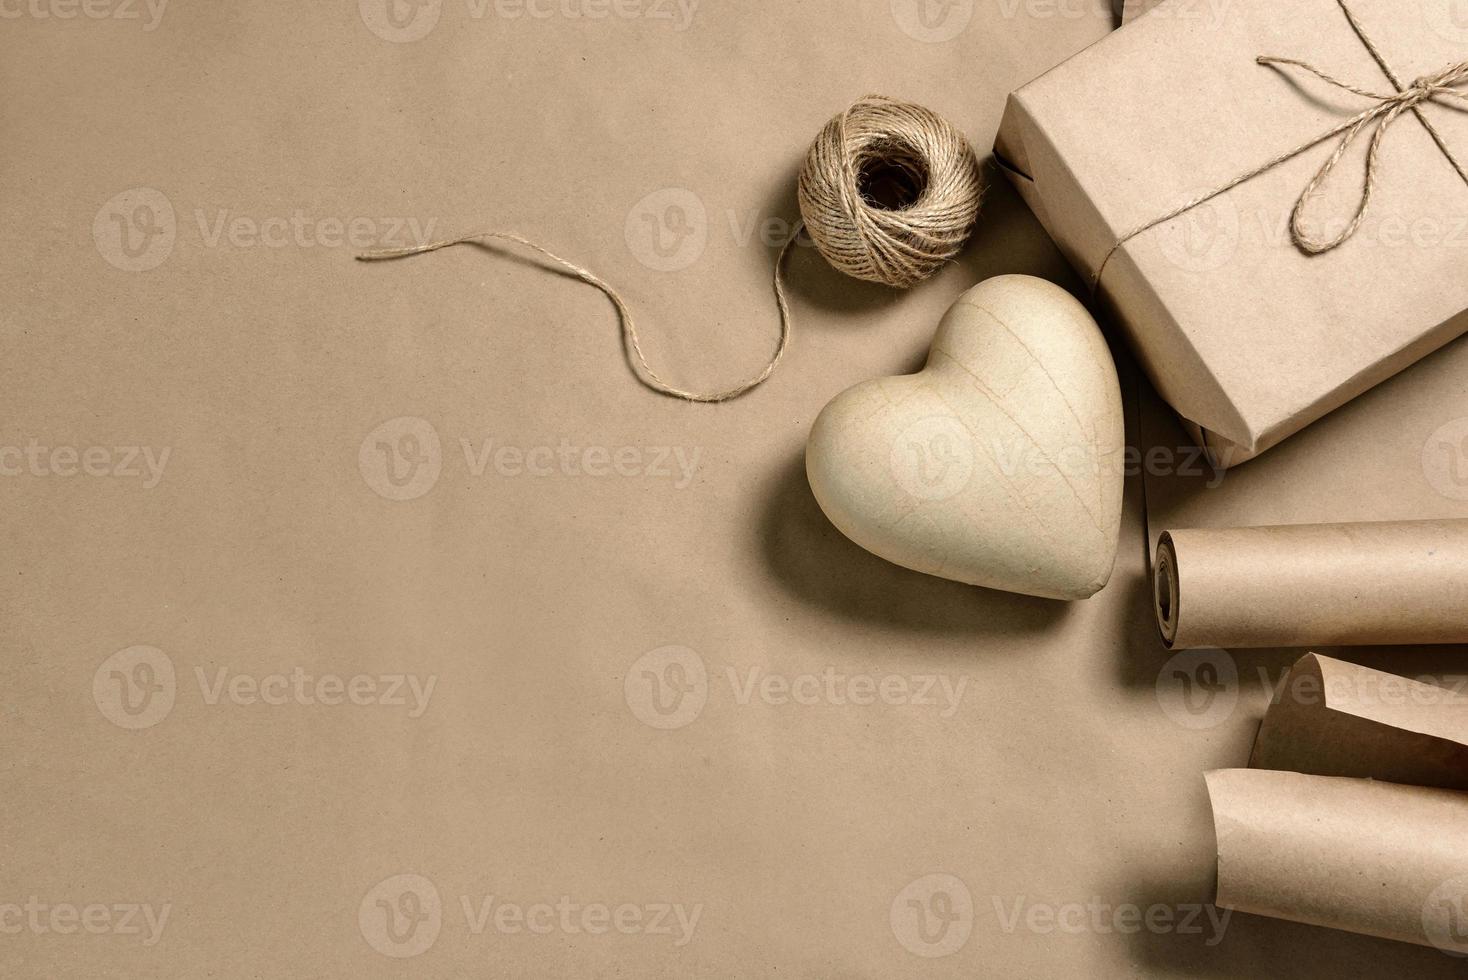 papiermache hjärta och hantverksförpackningar på en bakgrund med kopieringsutrymme foto